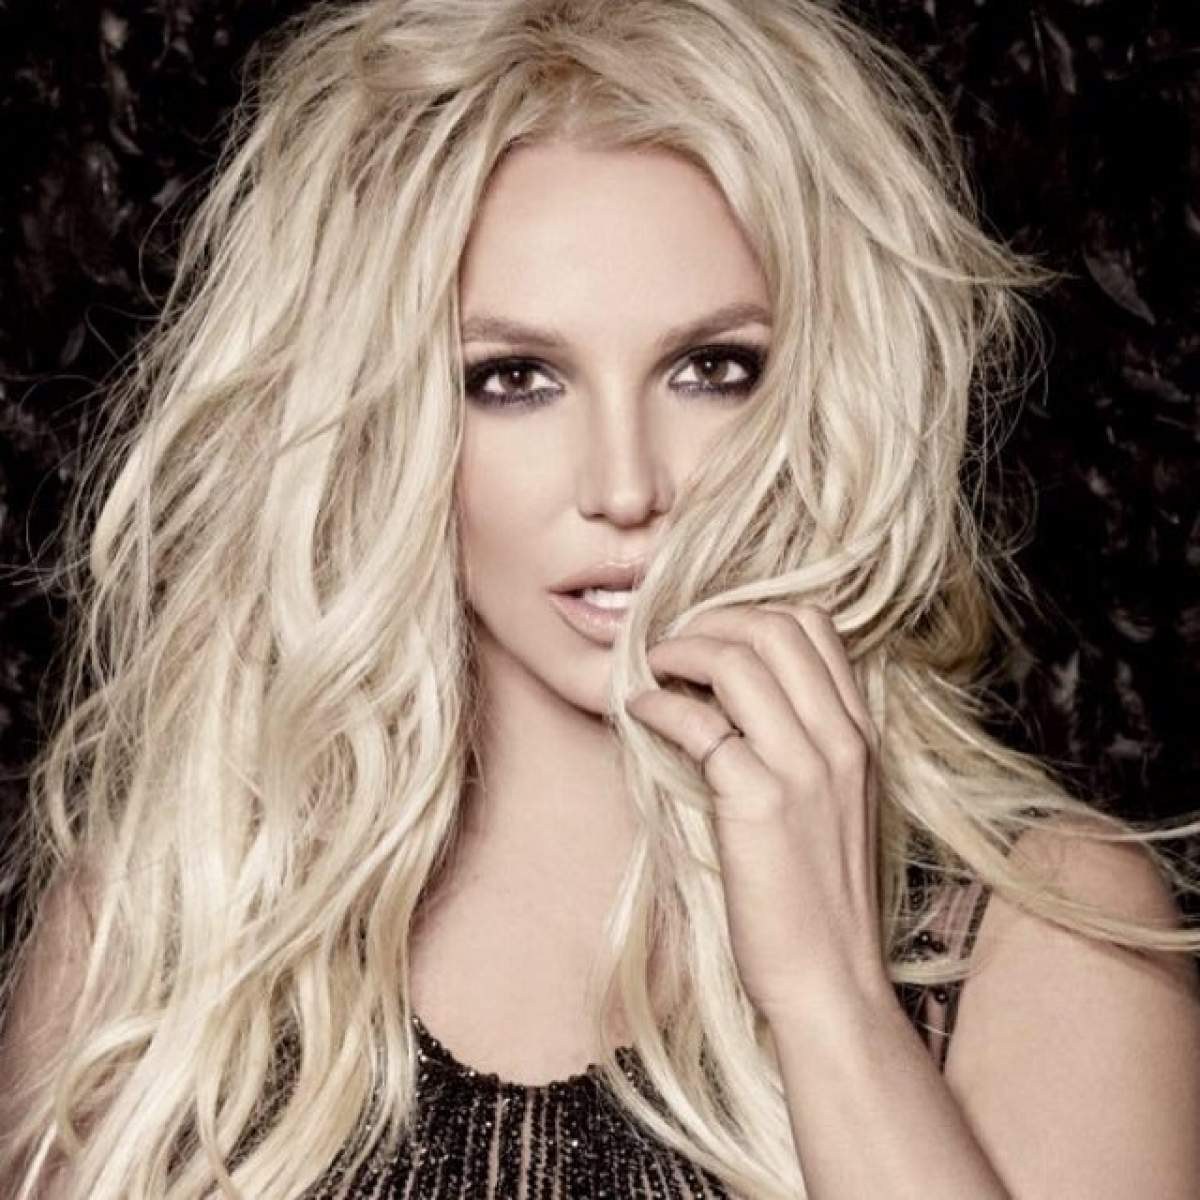 VIDEO / Britney Spears, apariţie senzaţională! A îmbrăcat un costum de baie minuscul şi s-a unduit lasciv pe plajă! Imaginile sunt HOT